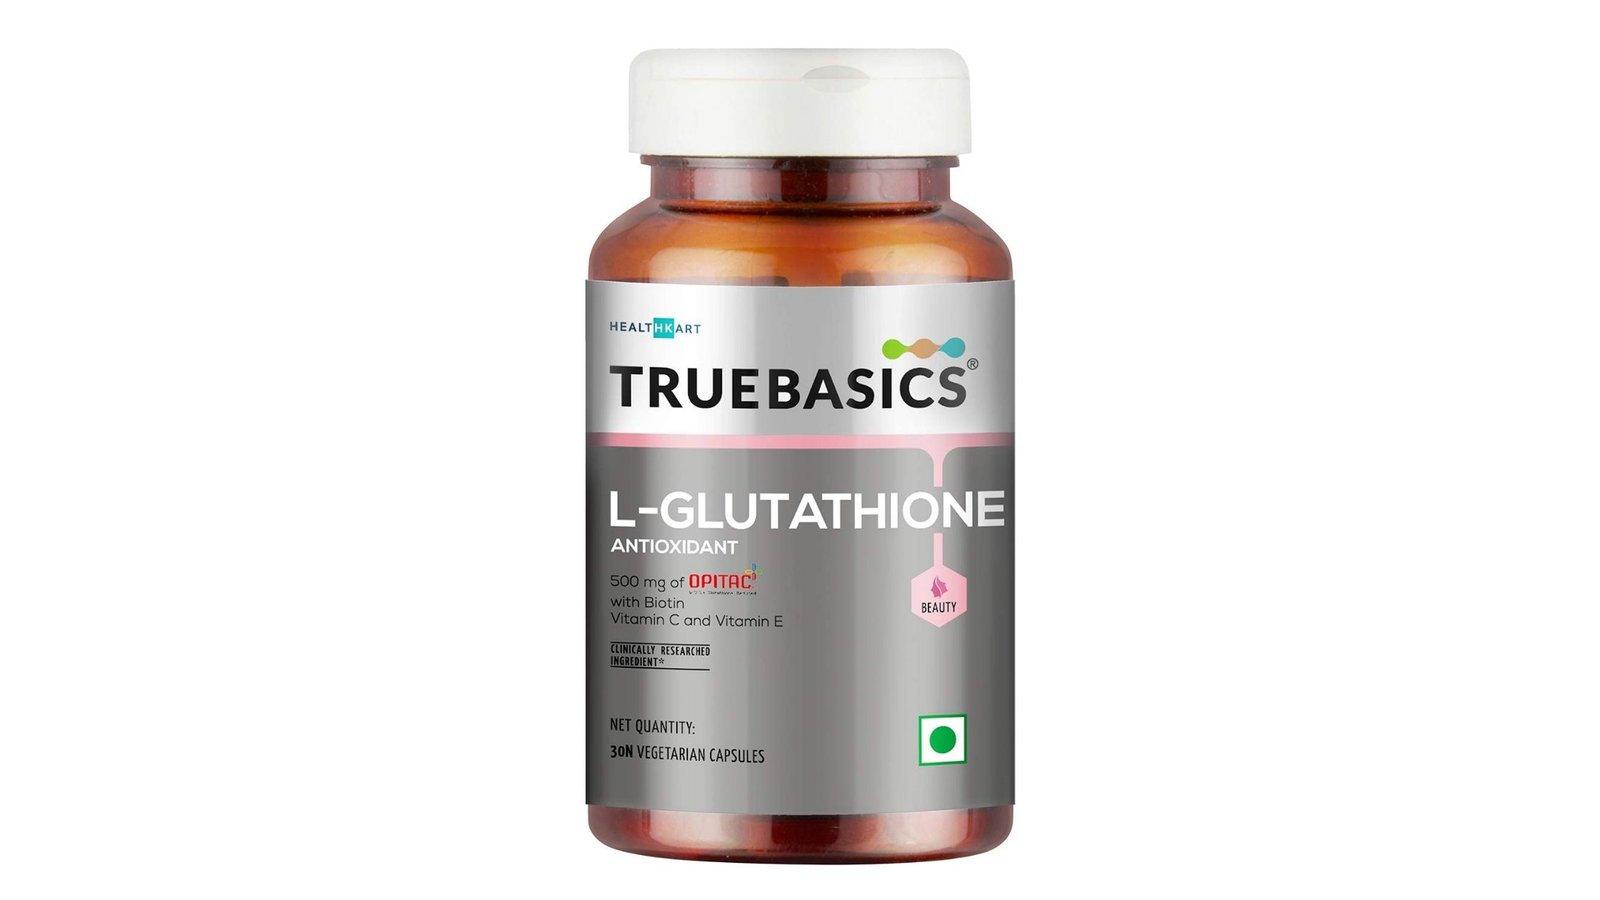 TrueBasics L-Glutathione